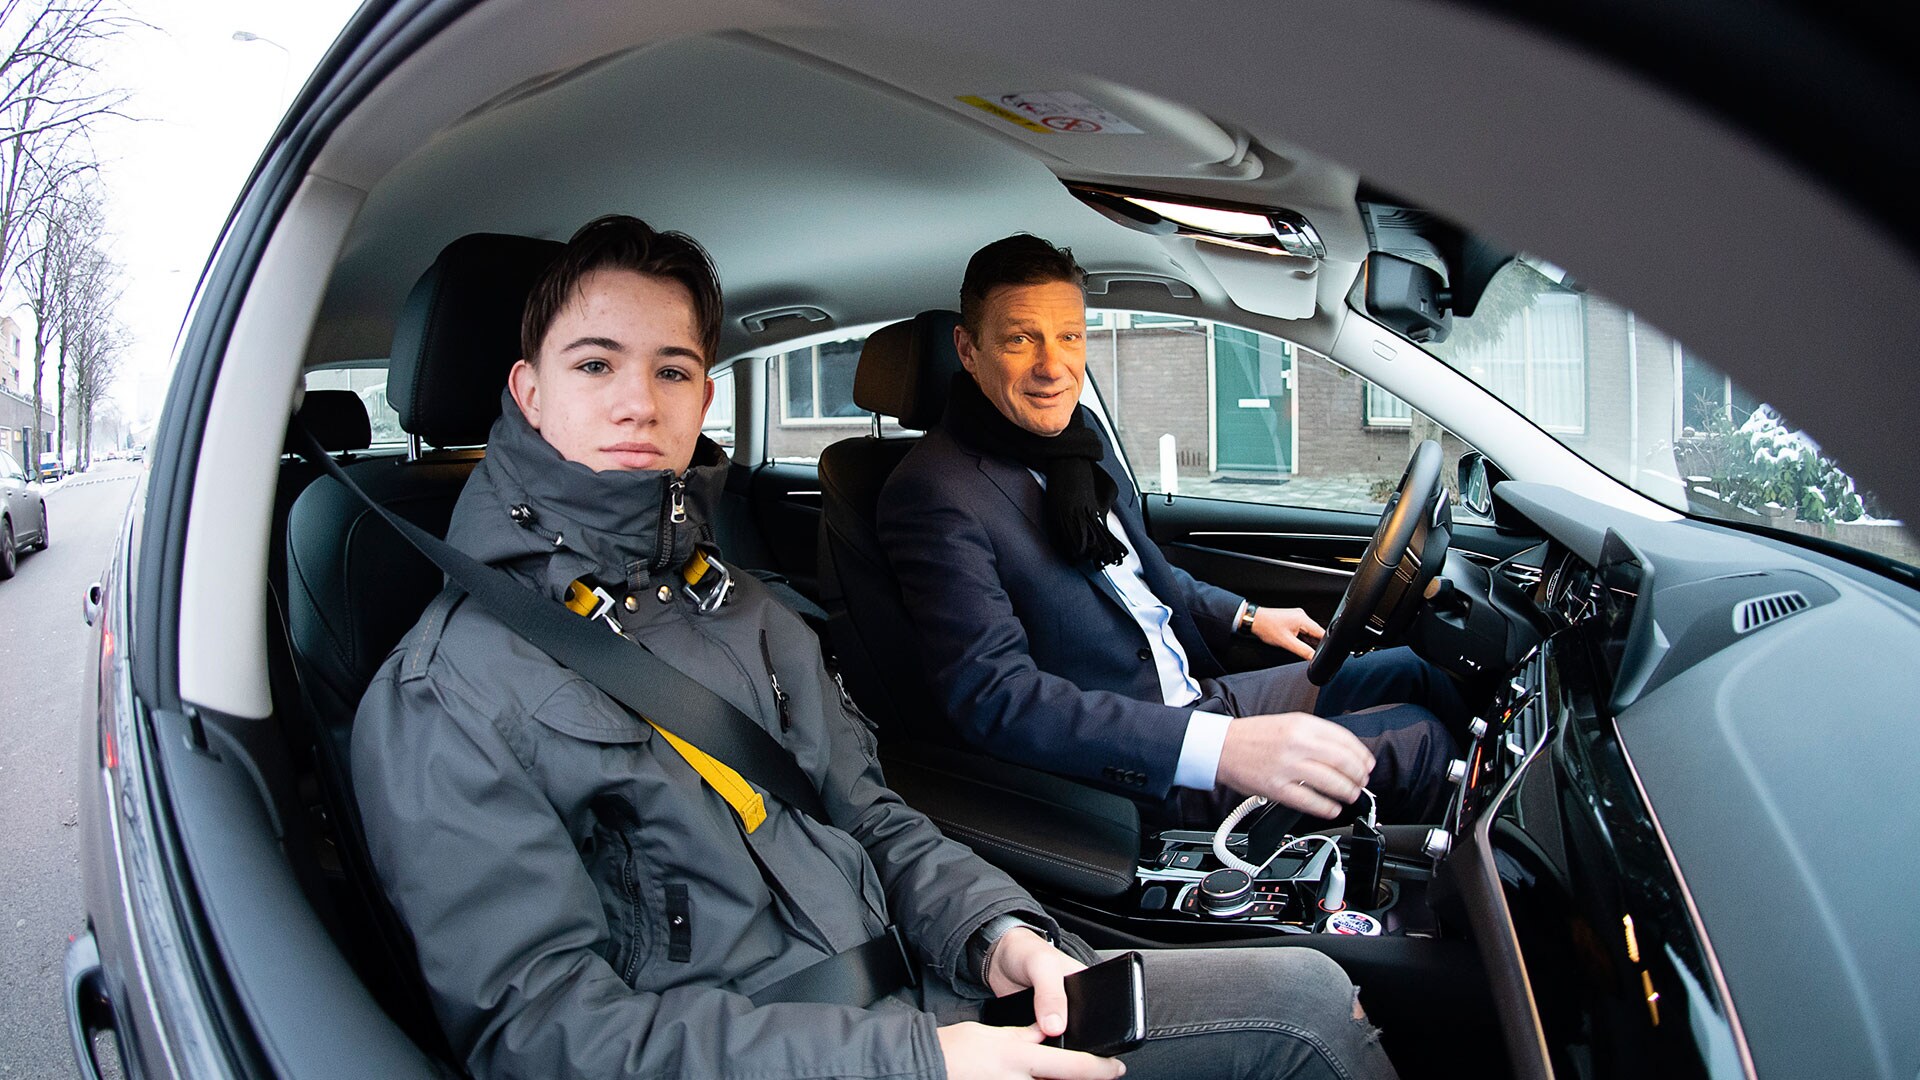 Nieuwe CEO Philips Benelux: 15-jarige Robin is de 'Baas van Morgen' (JINC)